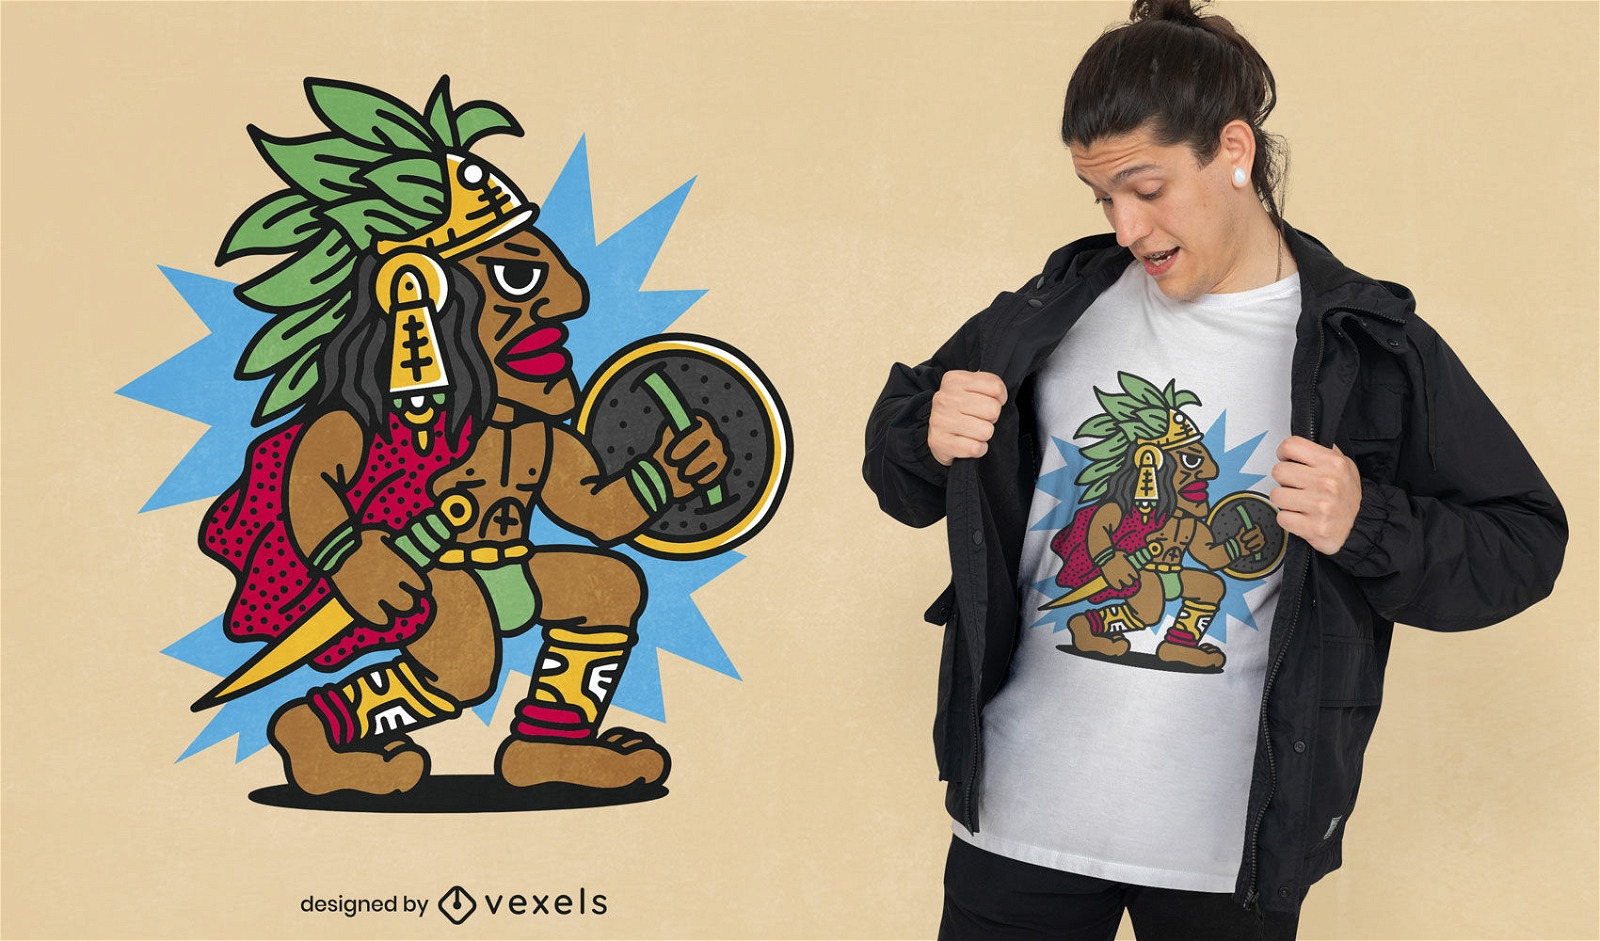 Dise?o de camiseta de personaje guerrero azteca.